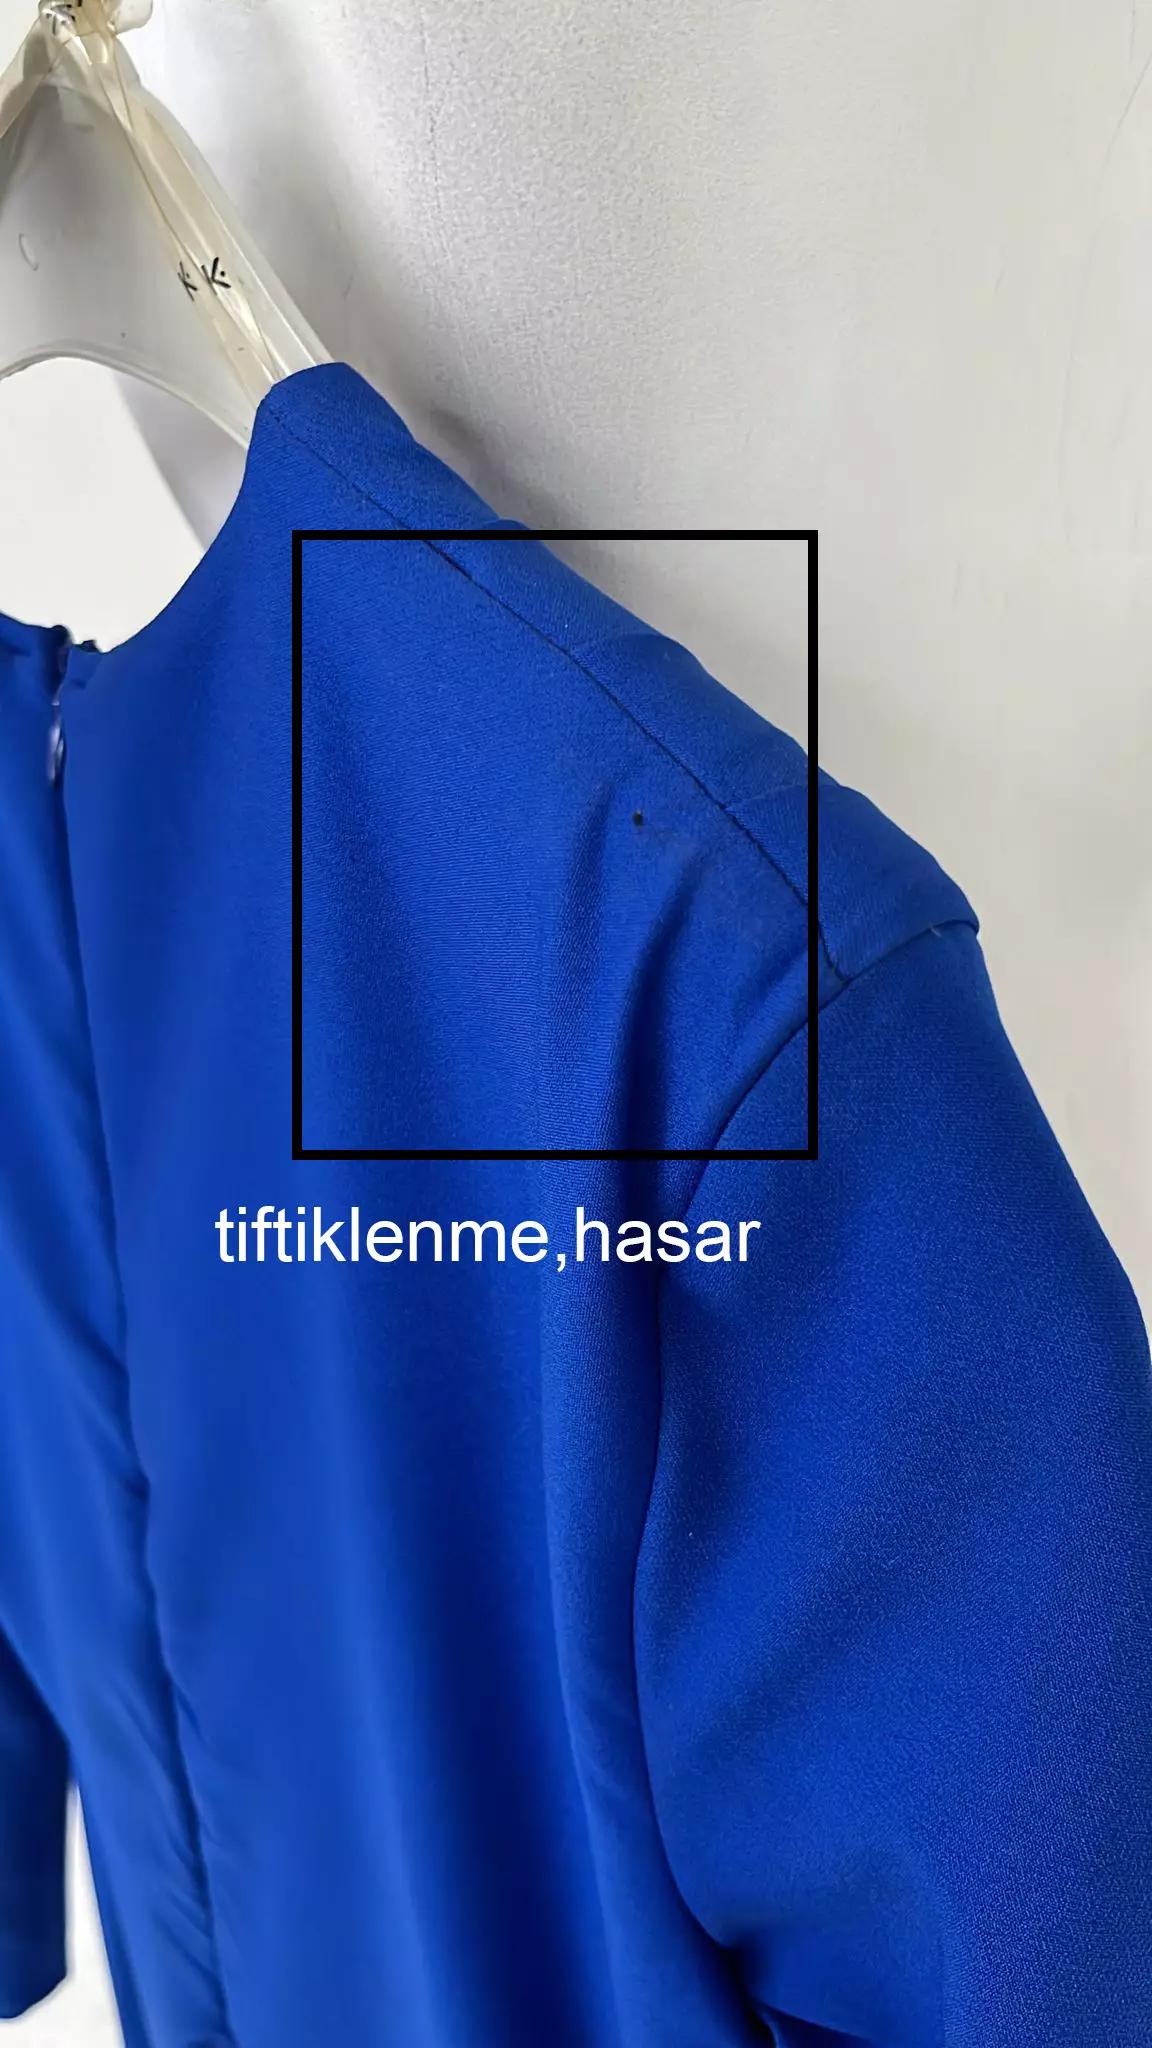 Blue crepe long sleeve maxi dress